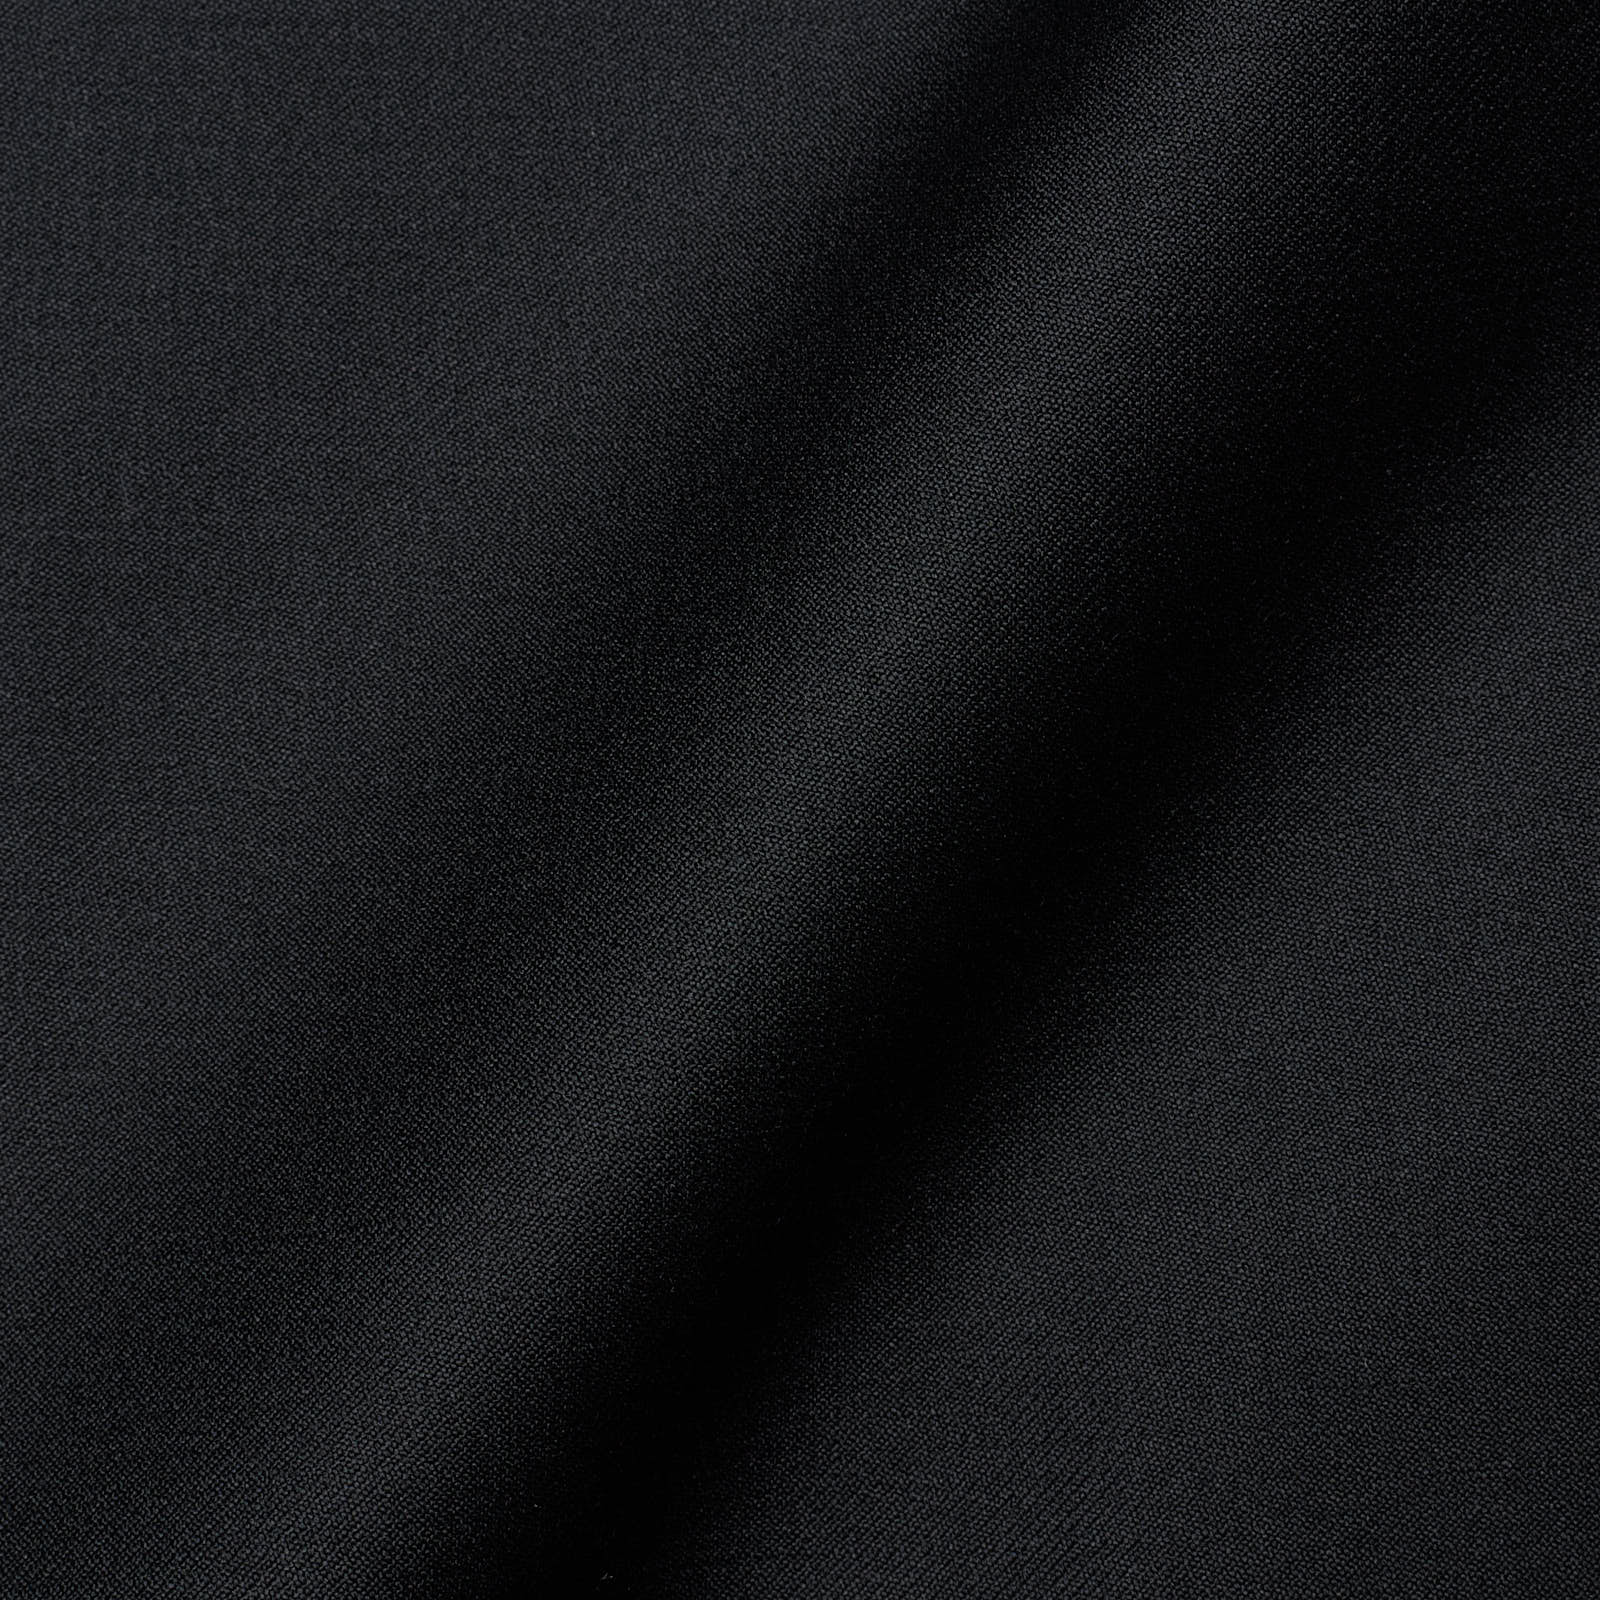 KITON Napoli Handmade Black Wool Suit EU 47 NEW US 36-38 Regular Fit